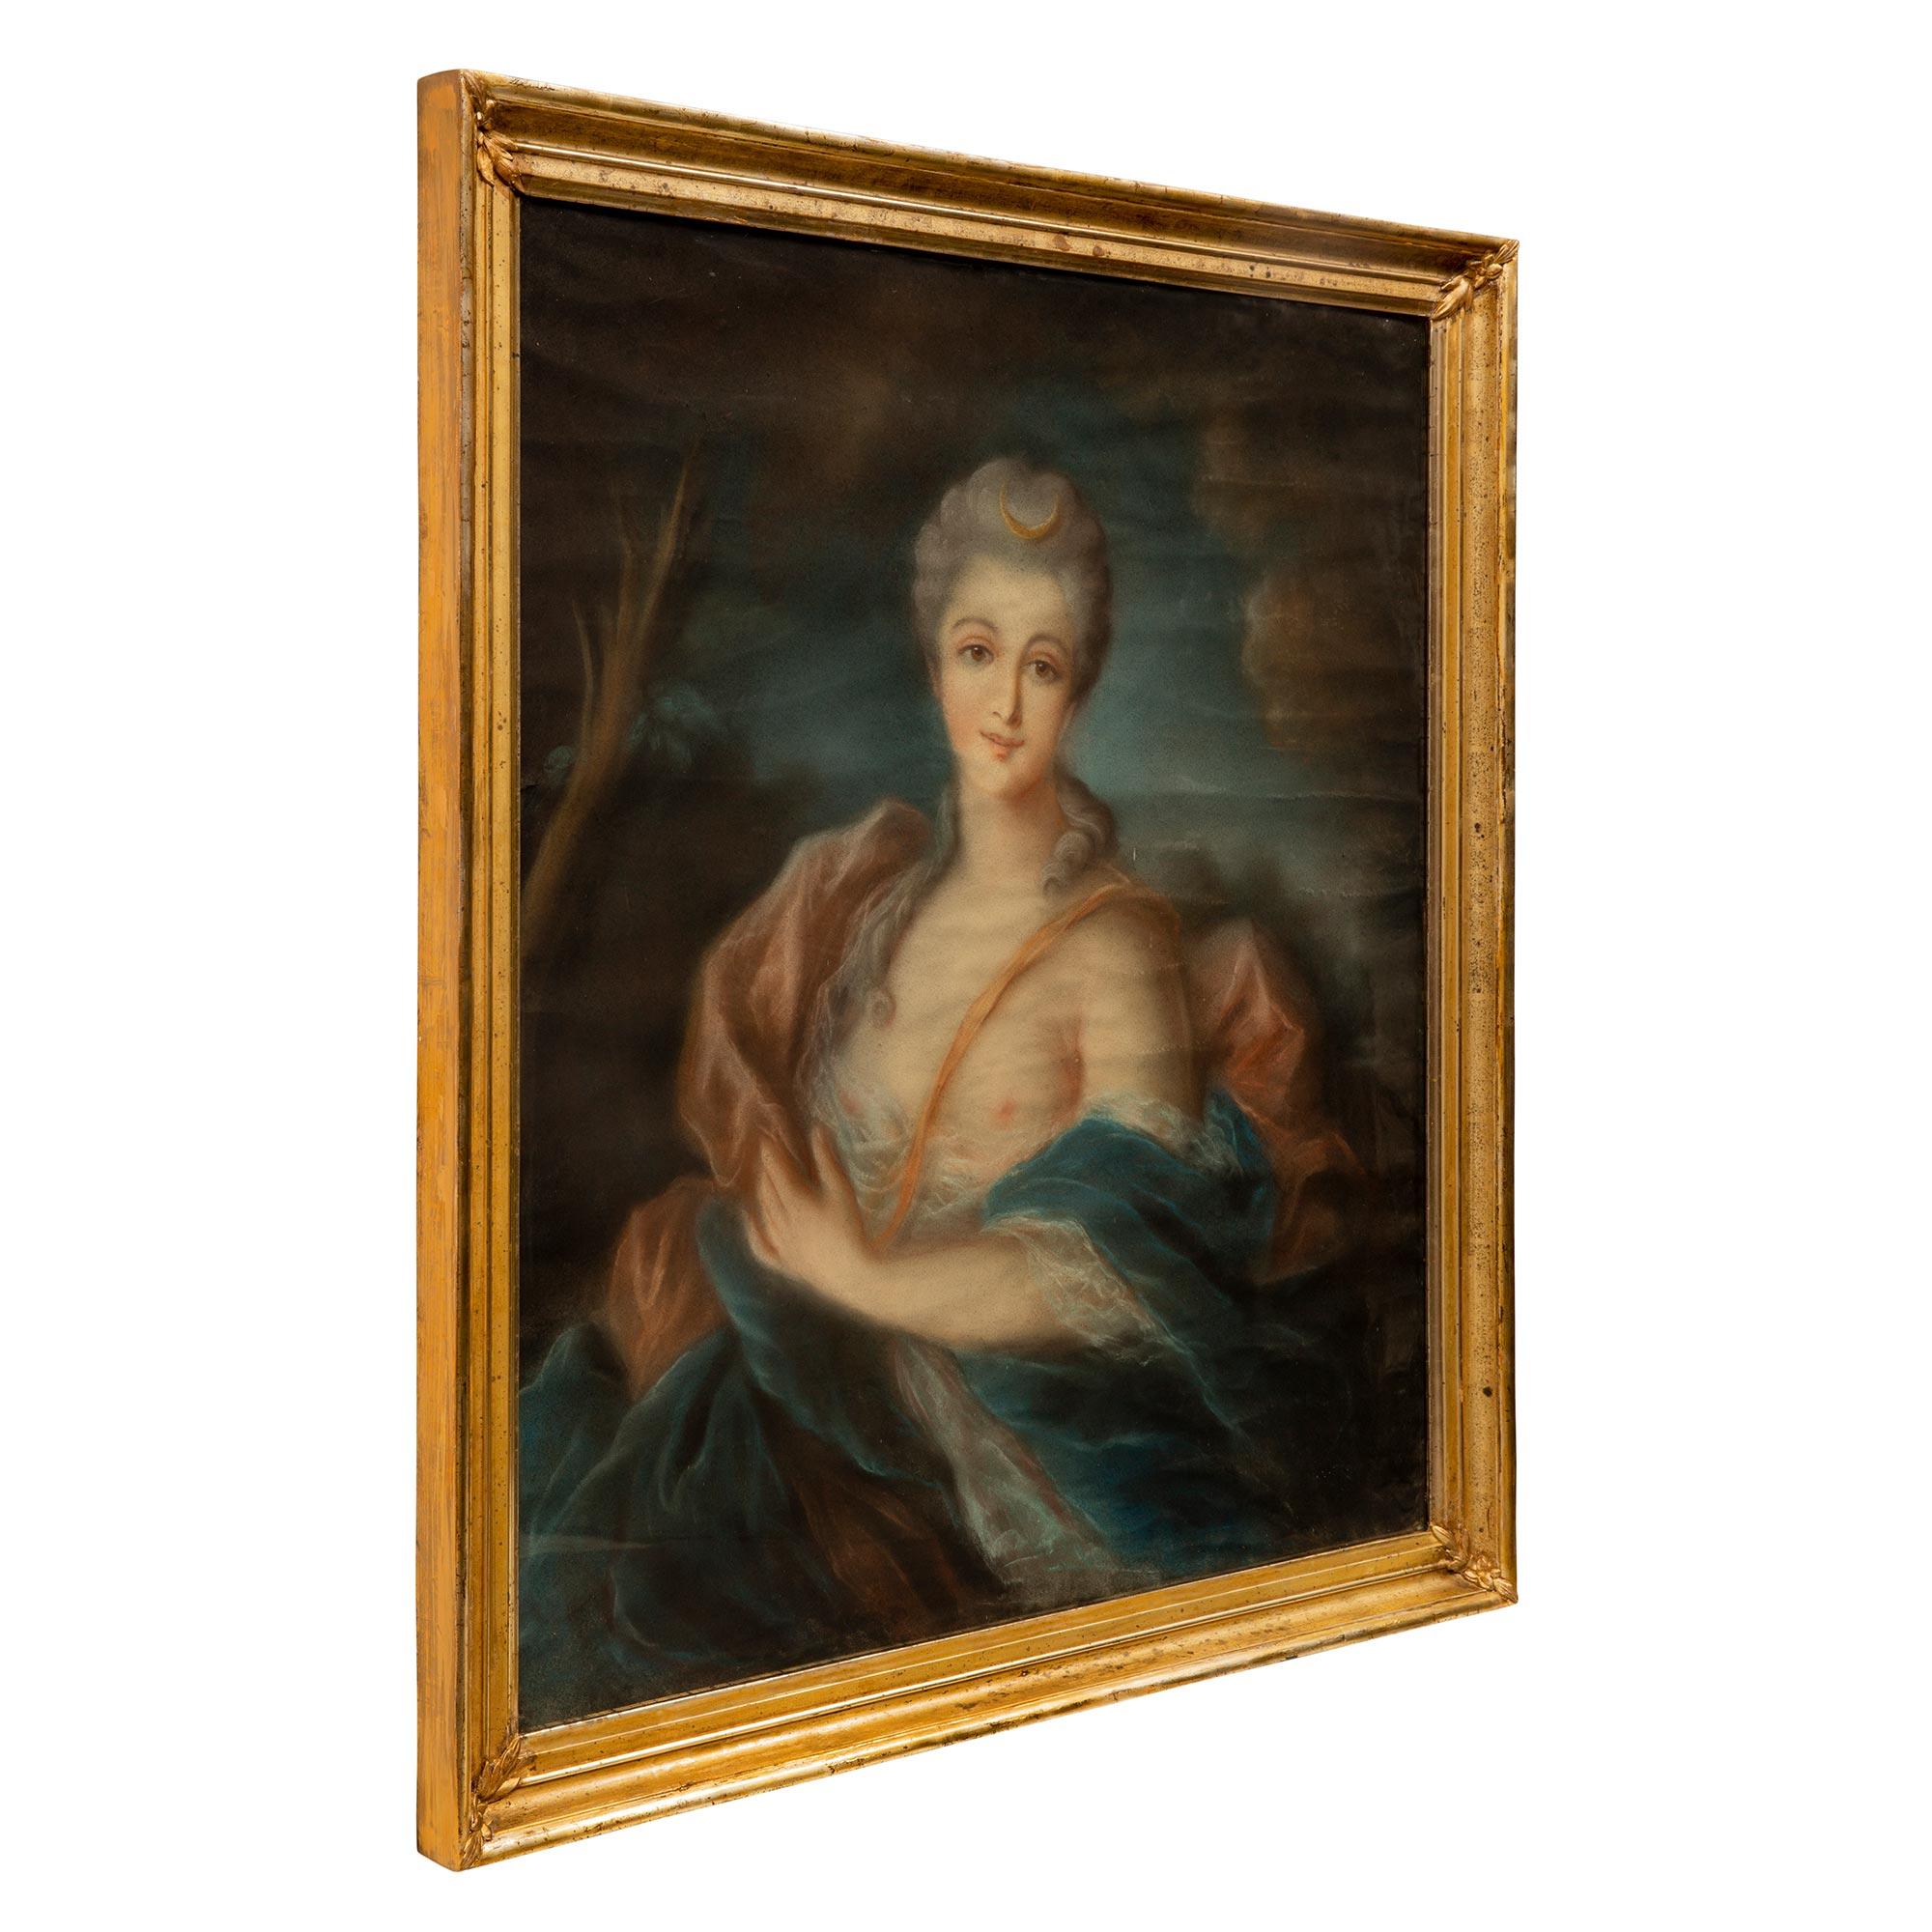 Ein schönes französisches Pastell der Jägerin Diana aus dem 19. Jahrhundert im Stil Louis XVI. Das schöne Pastell befindet sich in seinem originalen Mekka-Rahmen mit Glas und einem gesprenkelten Muster und eleganten Blattschnitzereien an jeder Ecke.